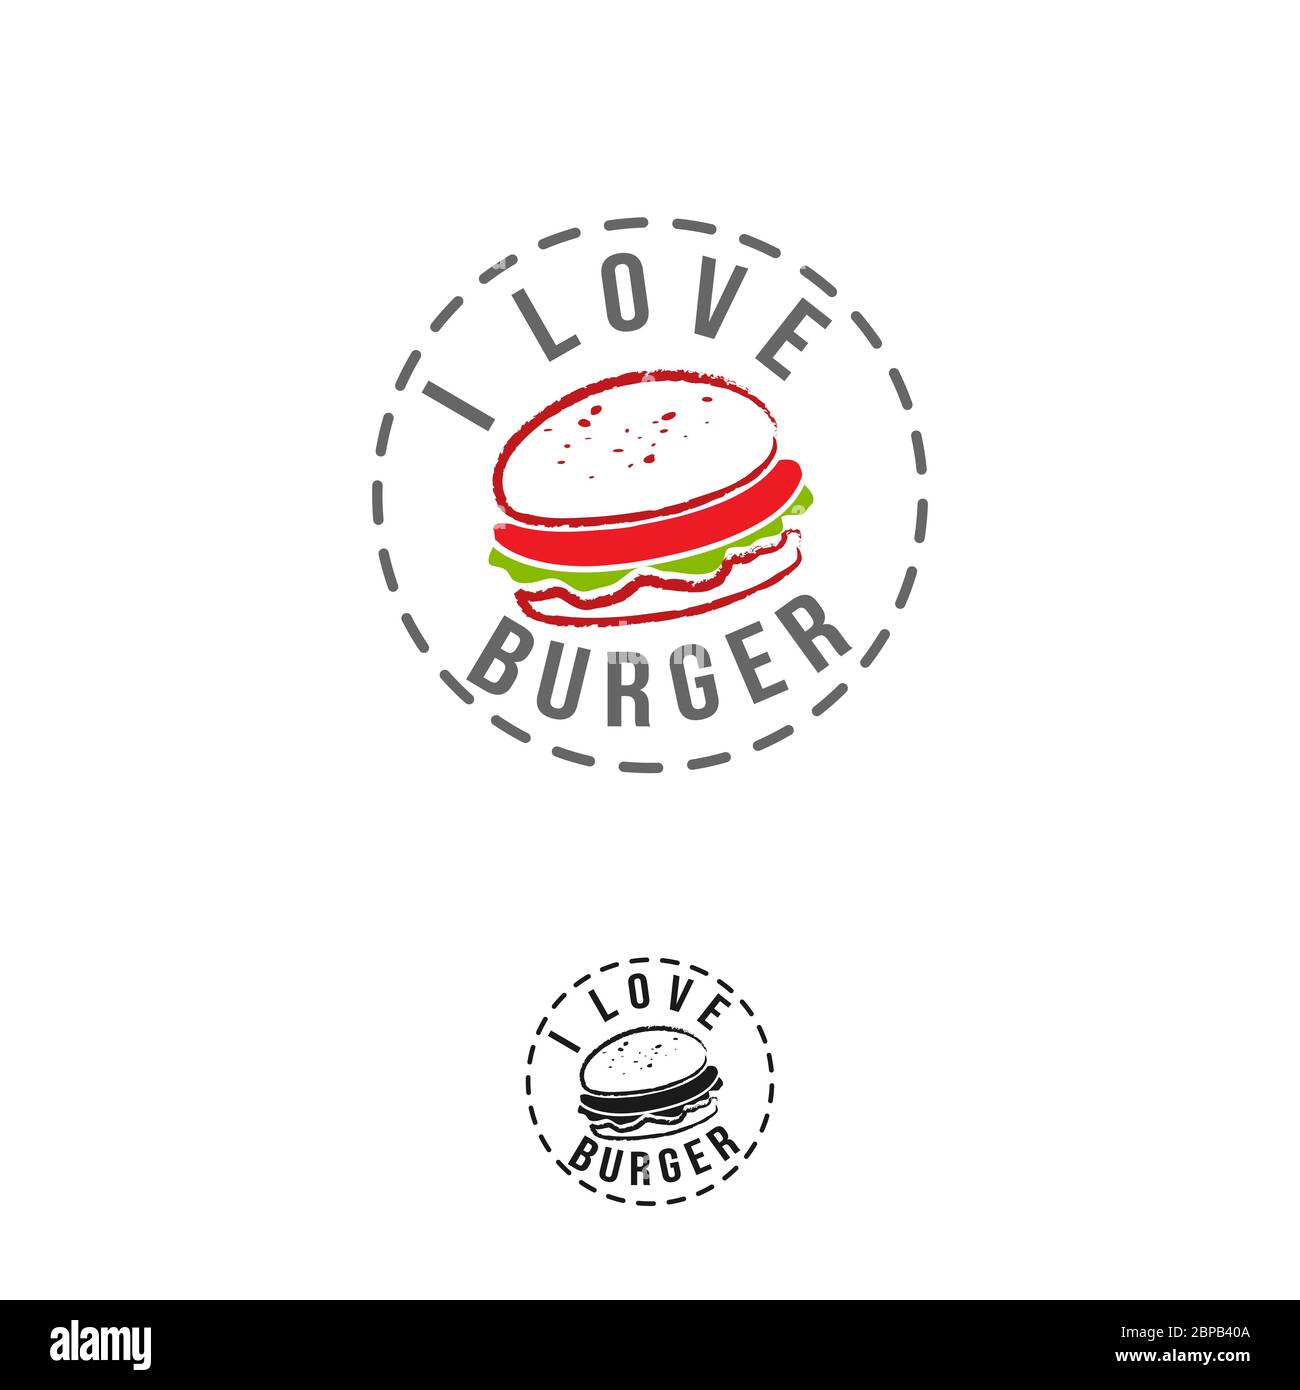 Étiquette de hamburger vintage Vector. Illustration de fast food monochrome dessinée à la main. Idéal pour les éléments de logo, d'affiche, d'icône, d'autocollant ou d'étiquette. Illustration de Vecteur